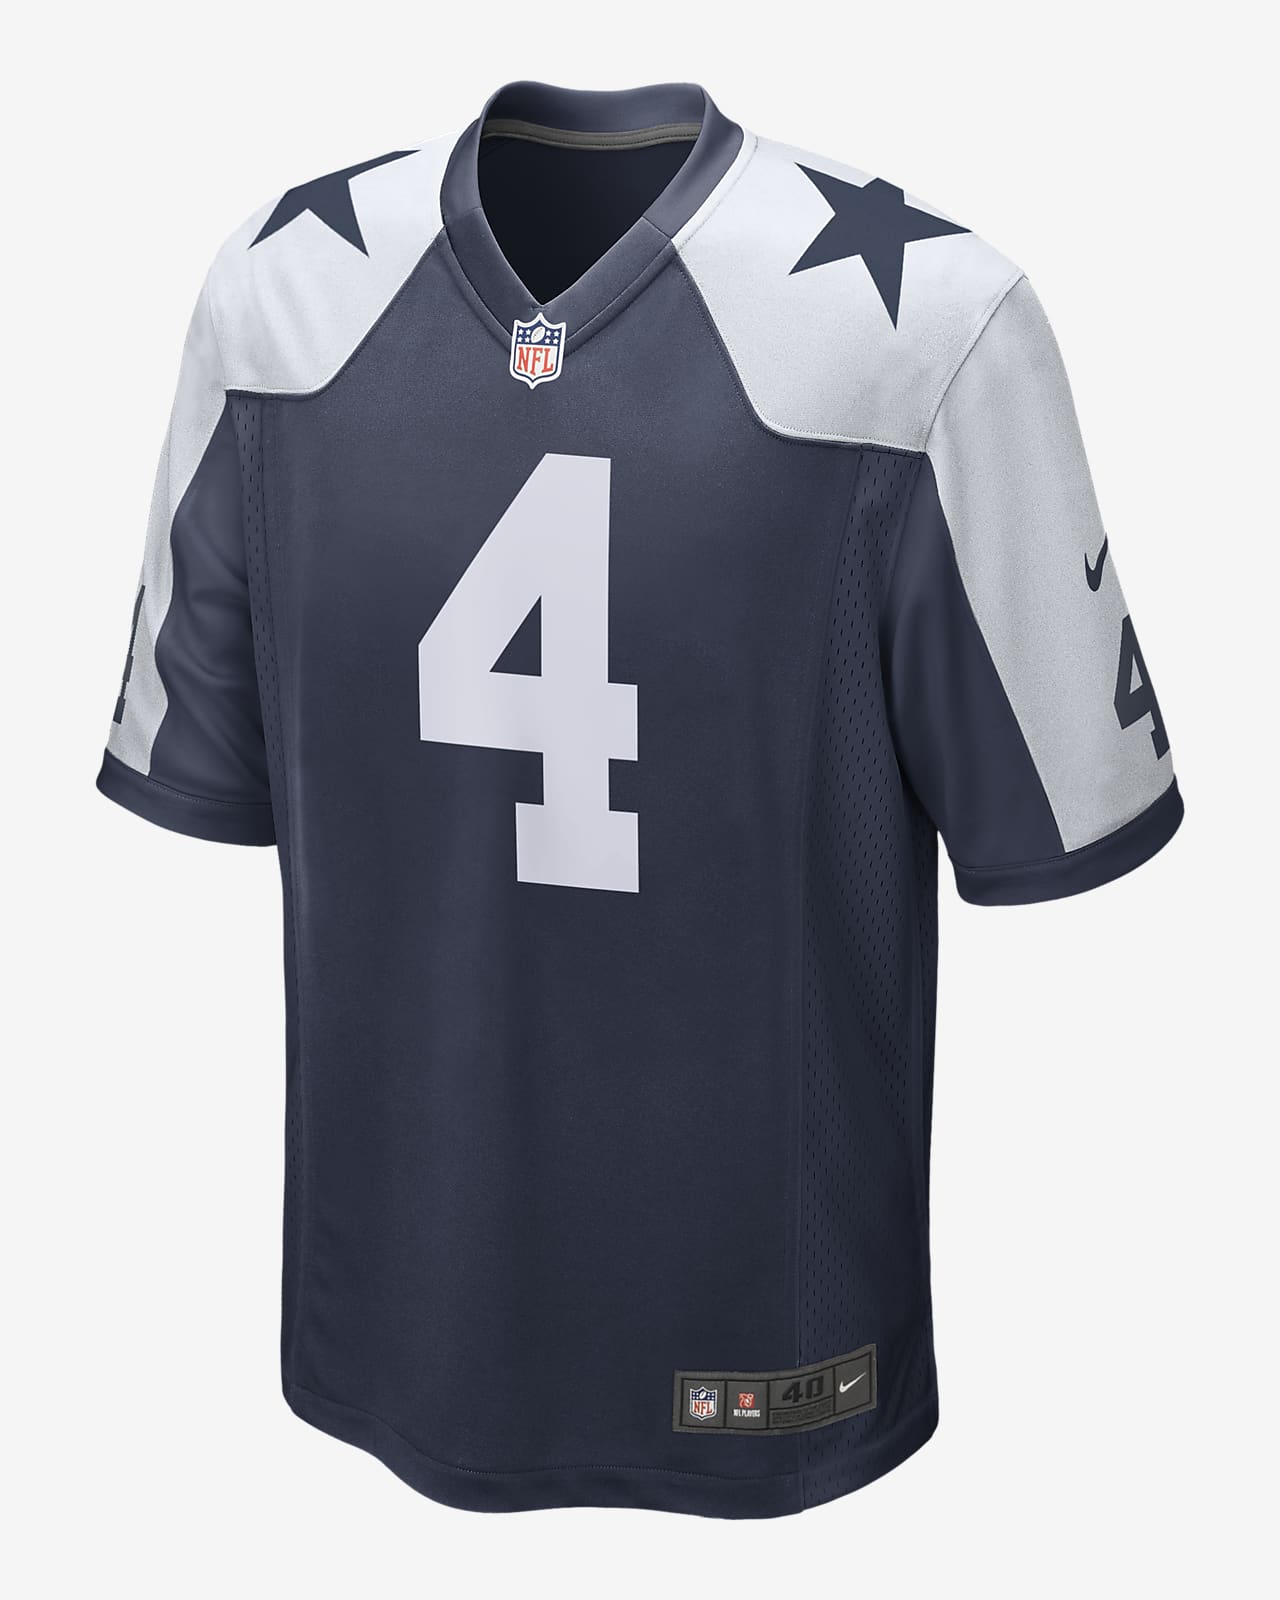 Jersey de fútbol americano NFL Dallas Cowboys (Dak Prescott) para hombre